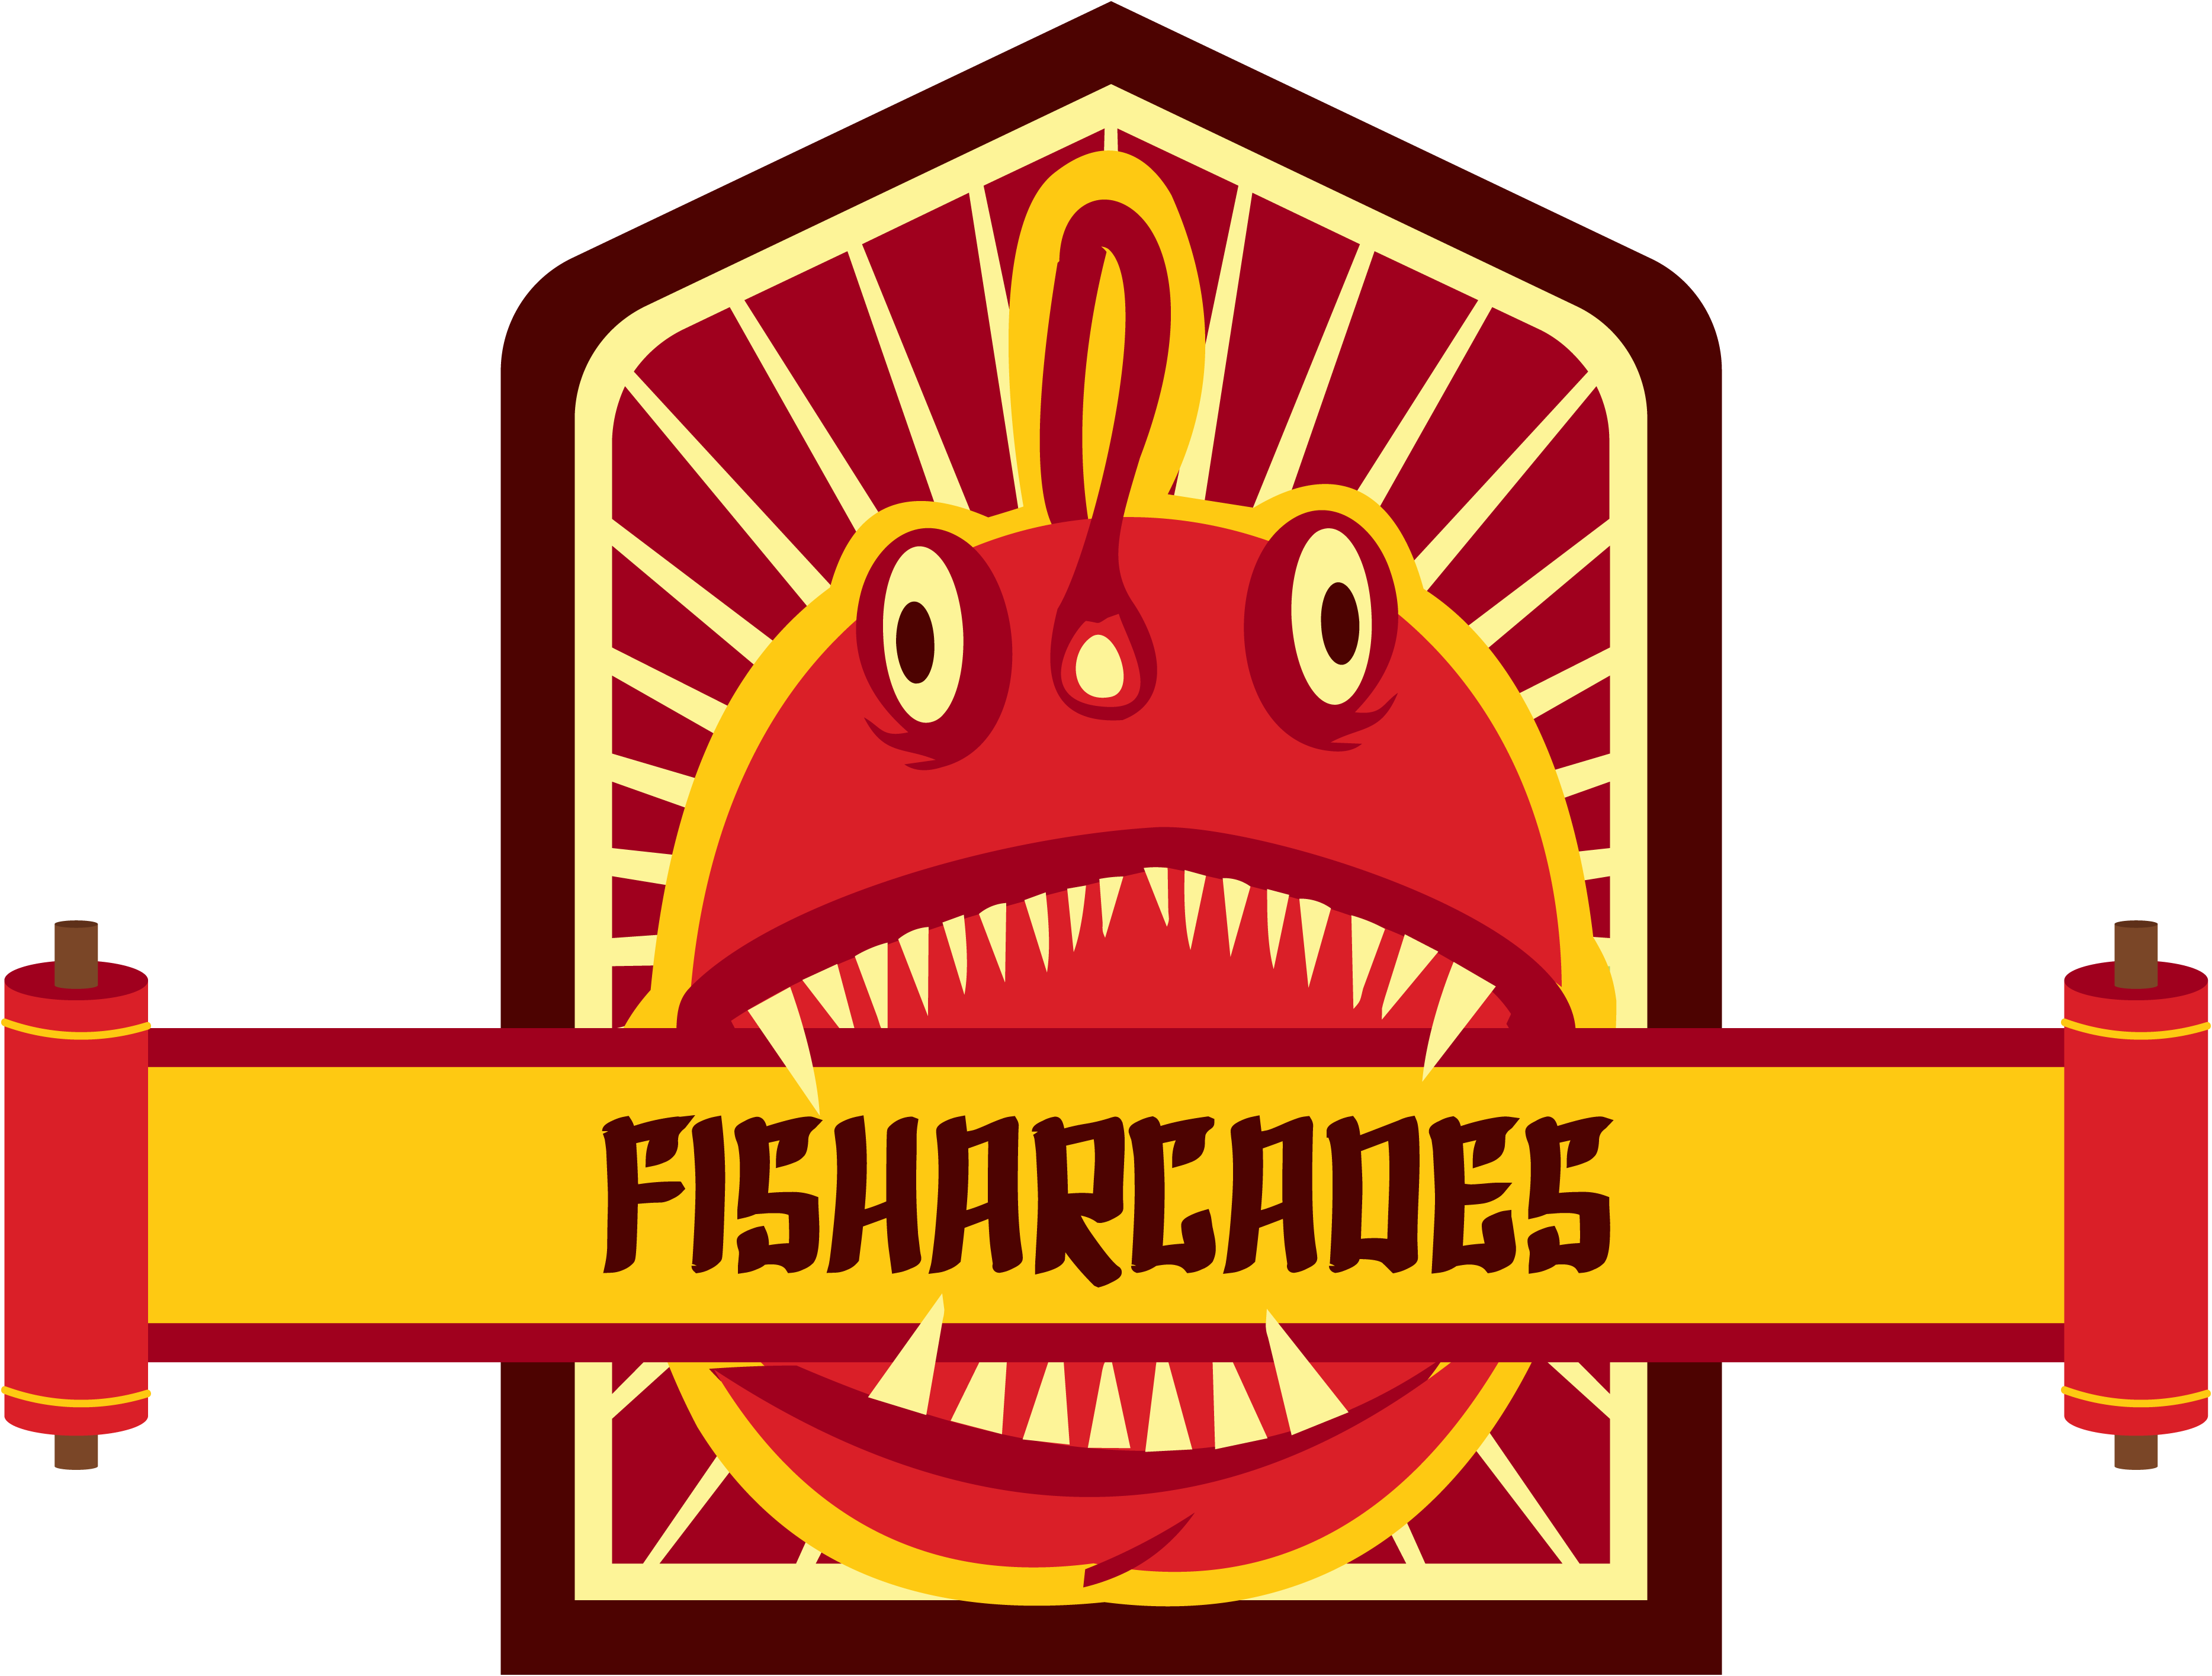 fisharcades games